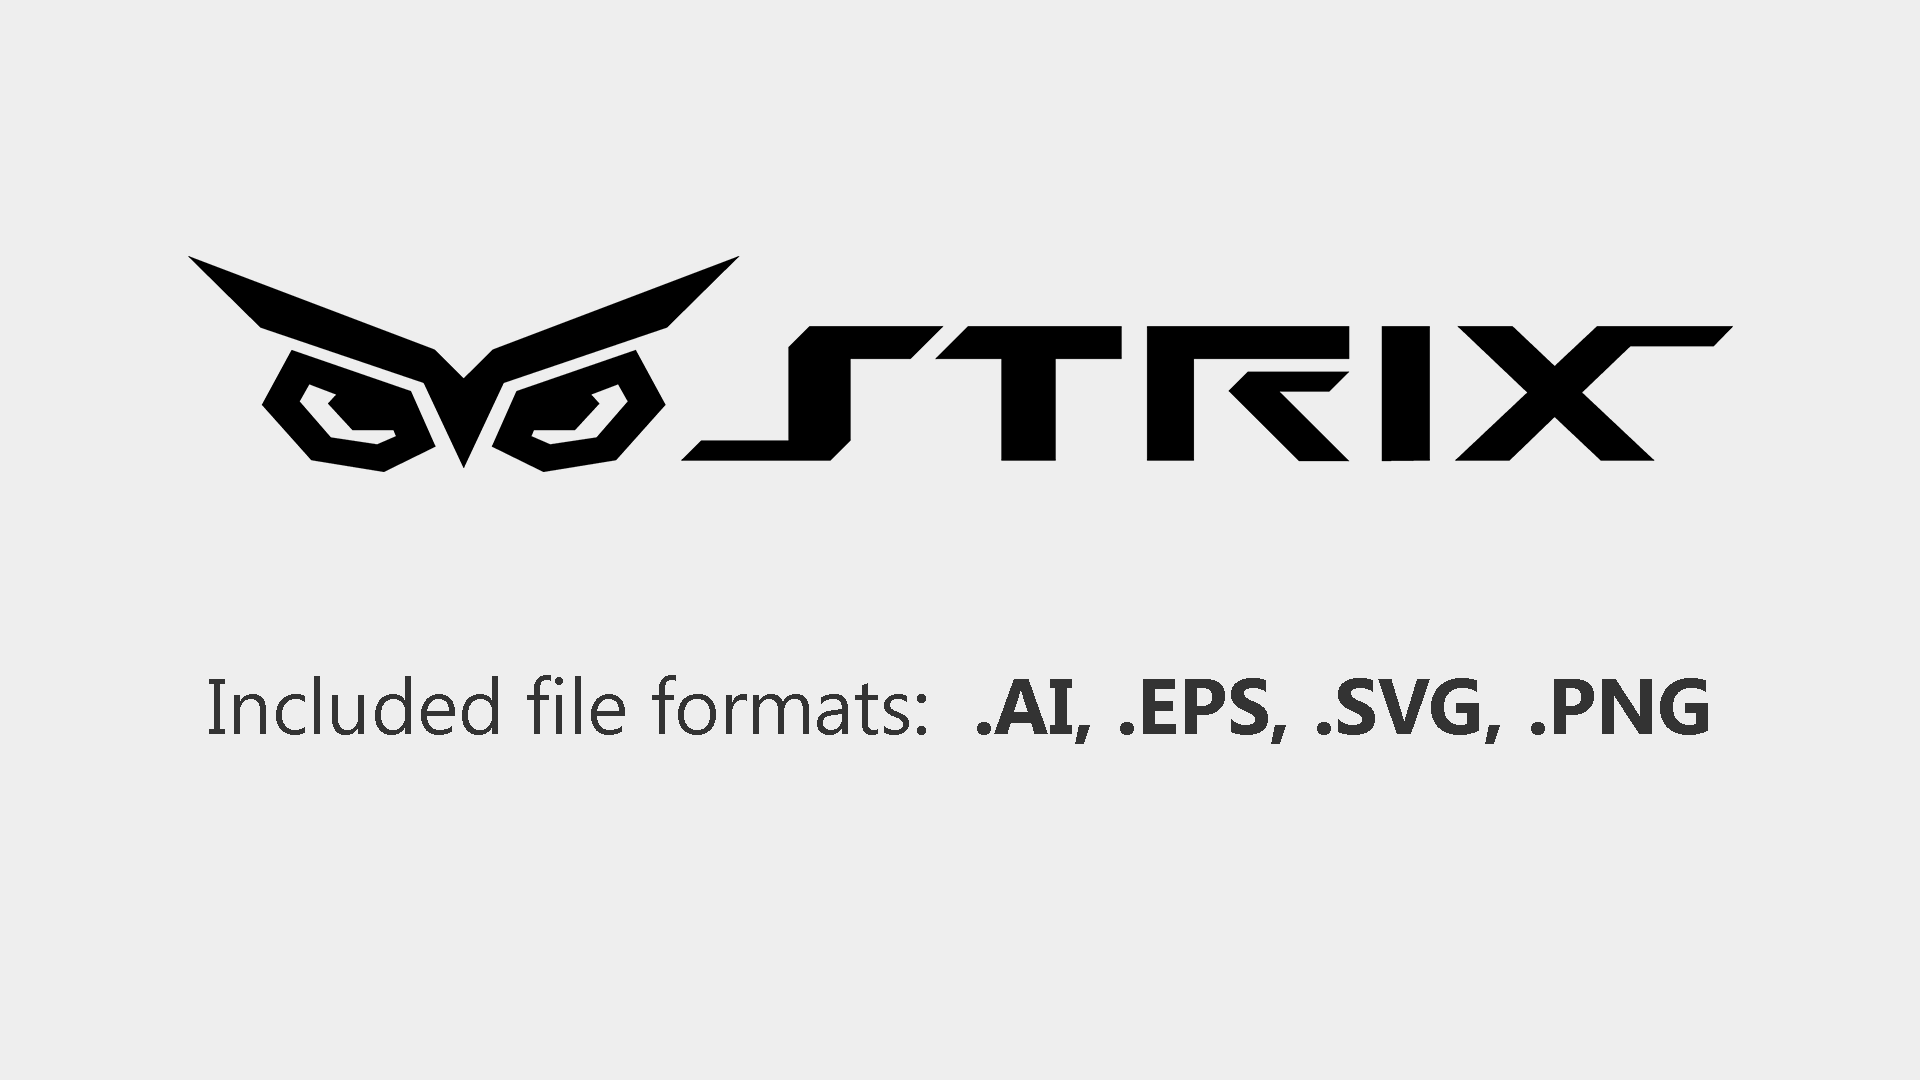 Strix Logo photo - 1